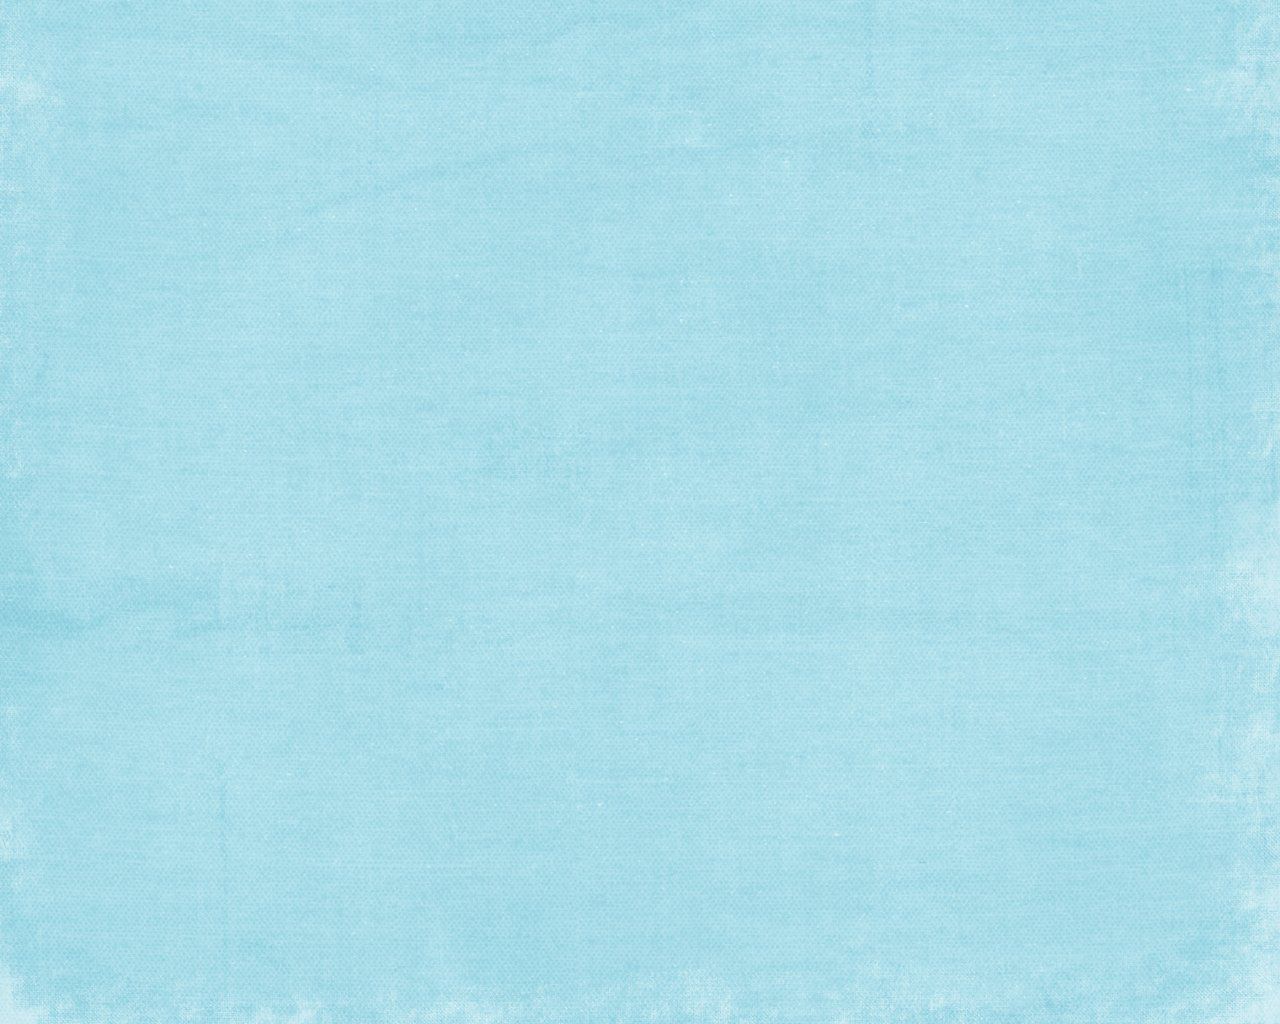 light blue background image free desktop background and wallpaper